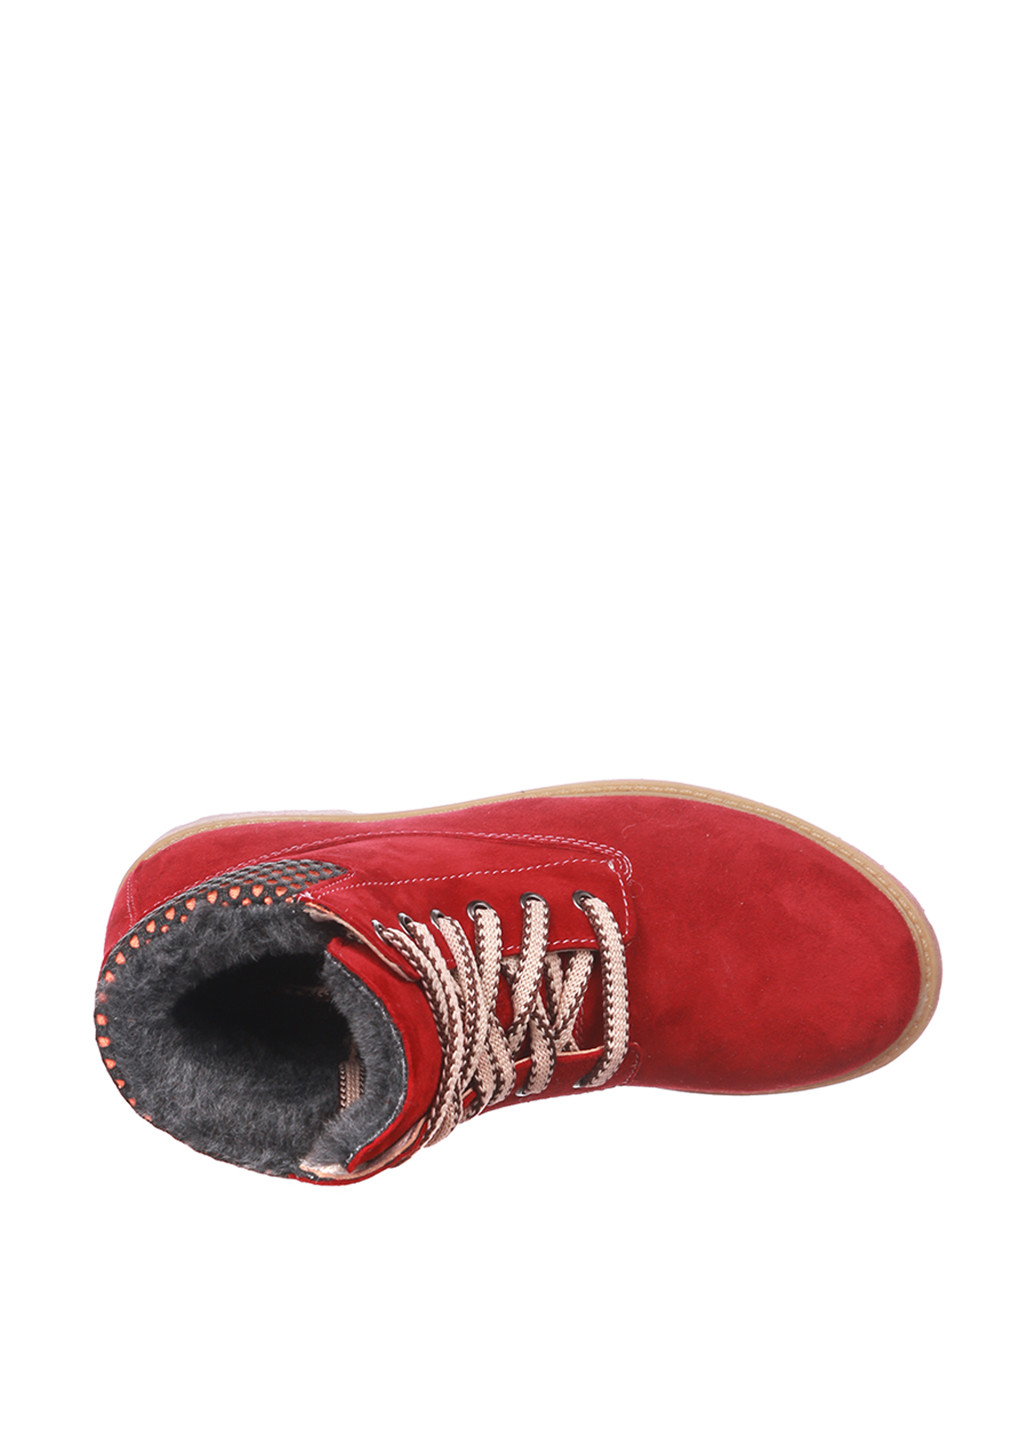 Осенние ботинки тимберленды Libero без декора из натуральной замши